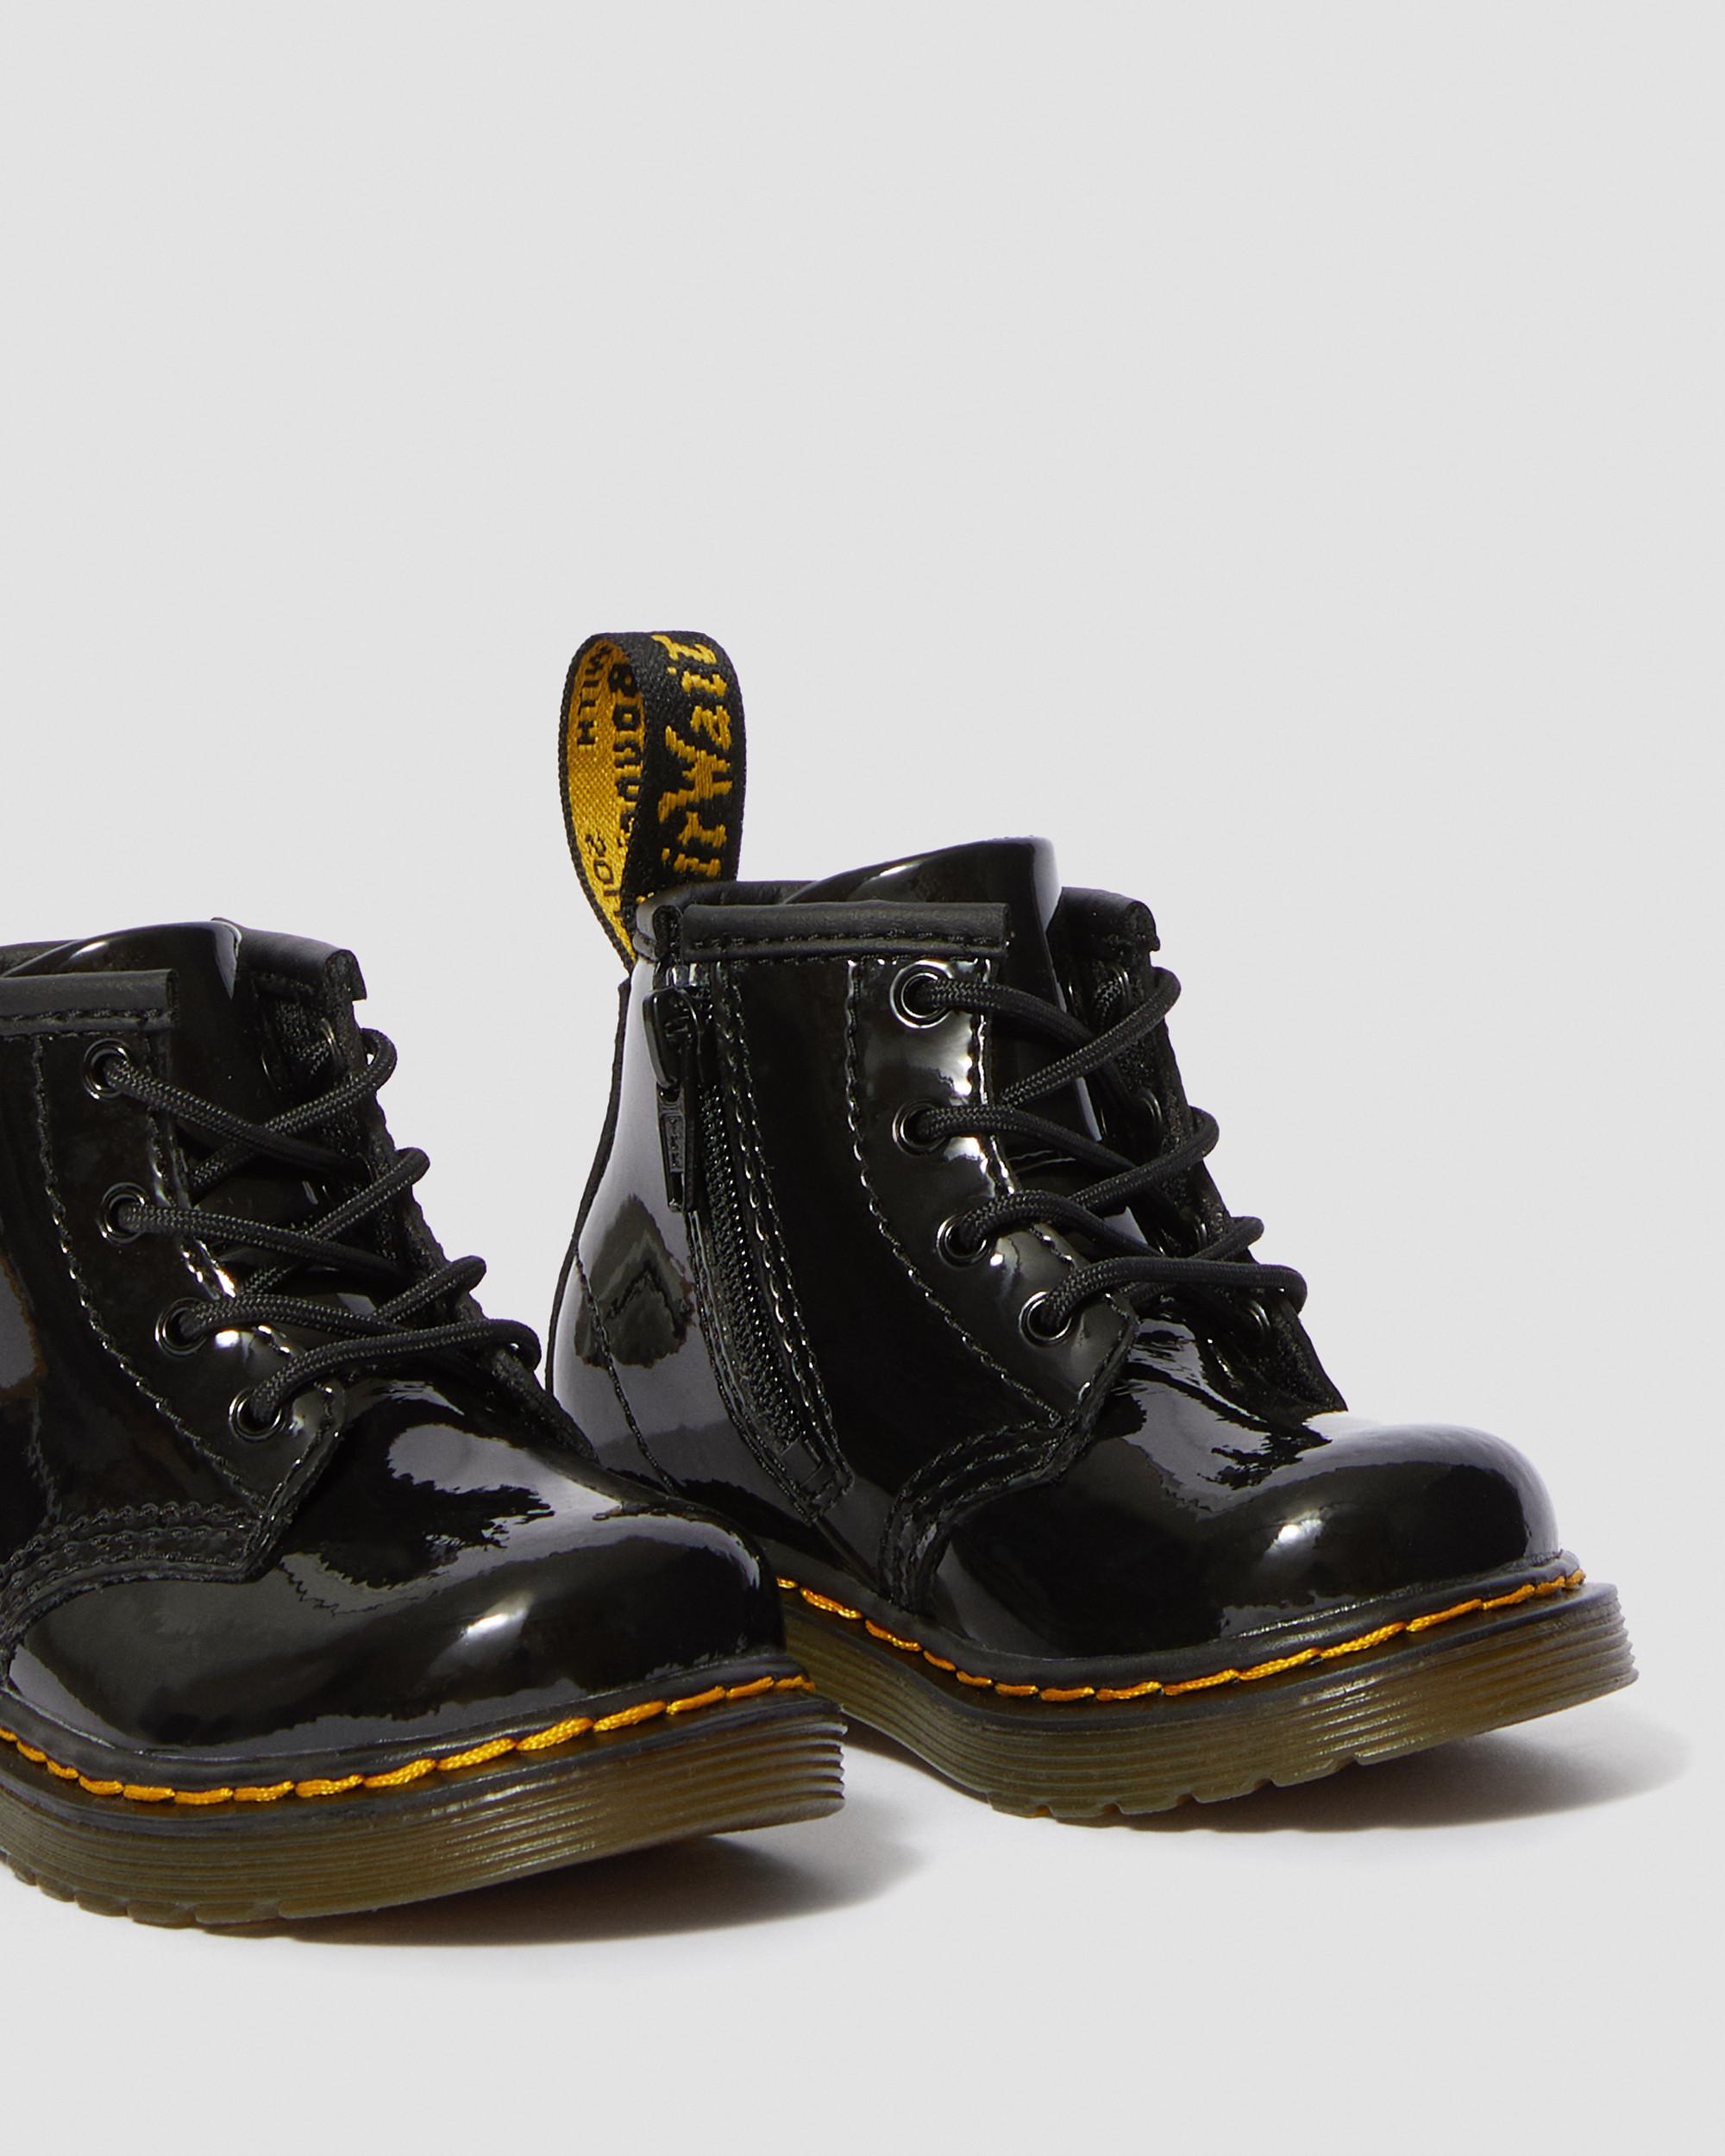 Dr. Martens Black Patent 1460 Boots